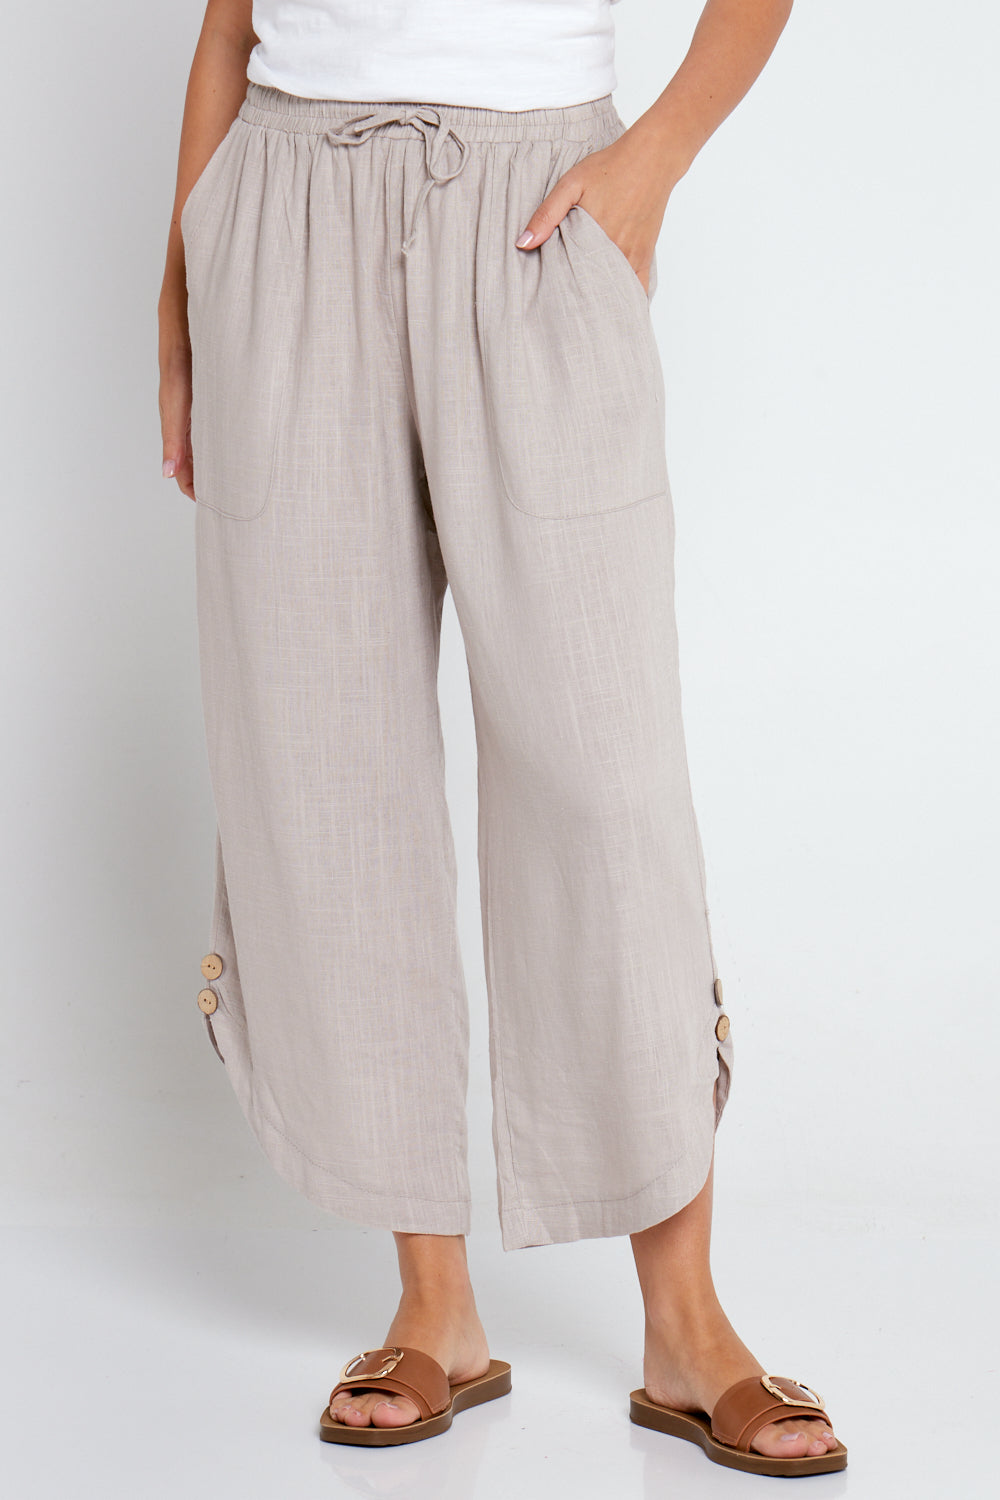 Beige linen-cotton flat-front lightweight Women Trousers